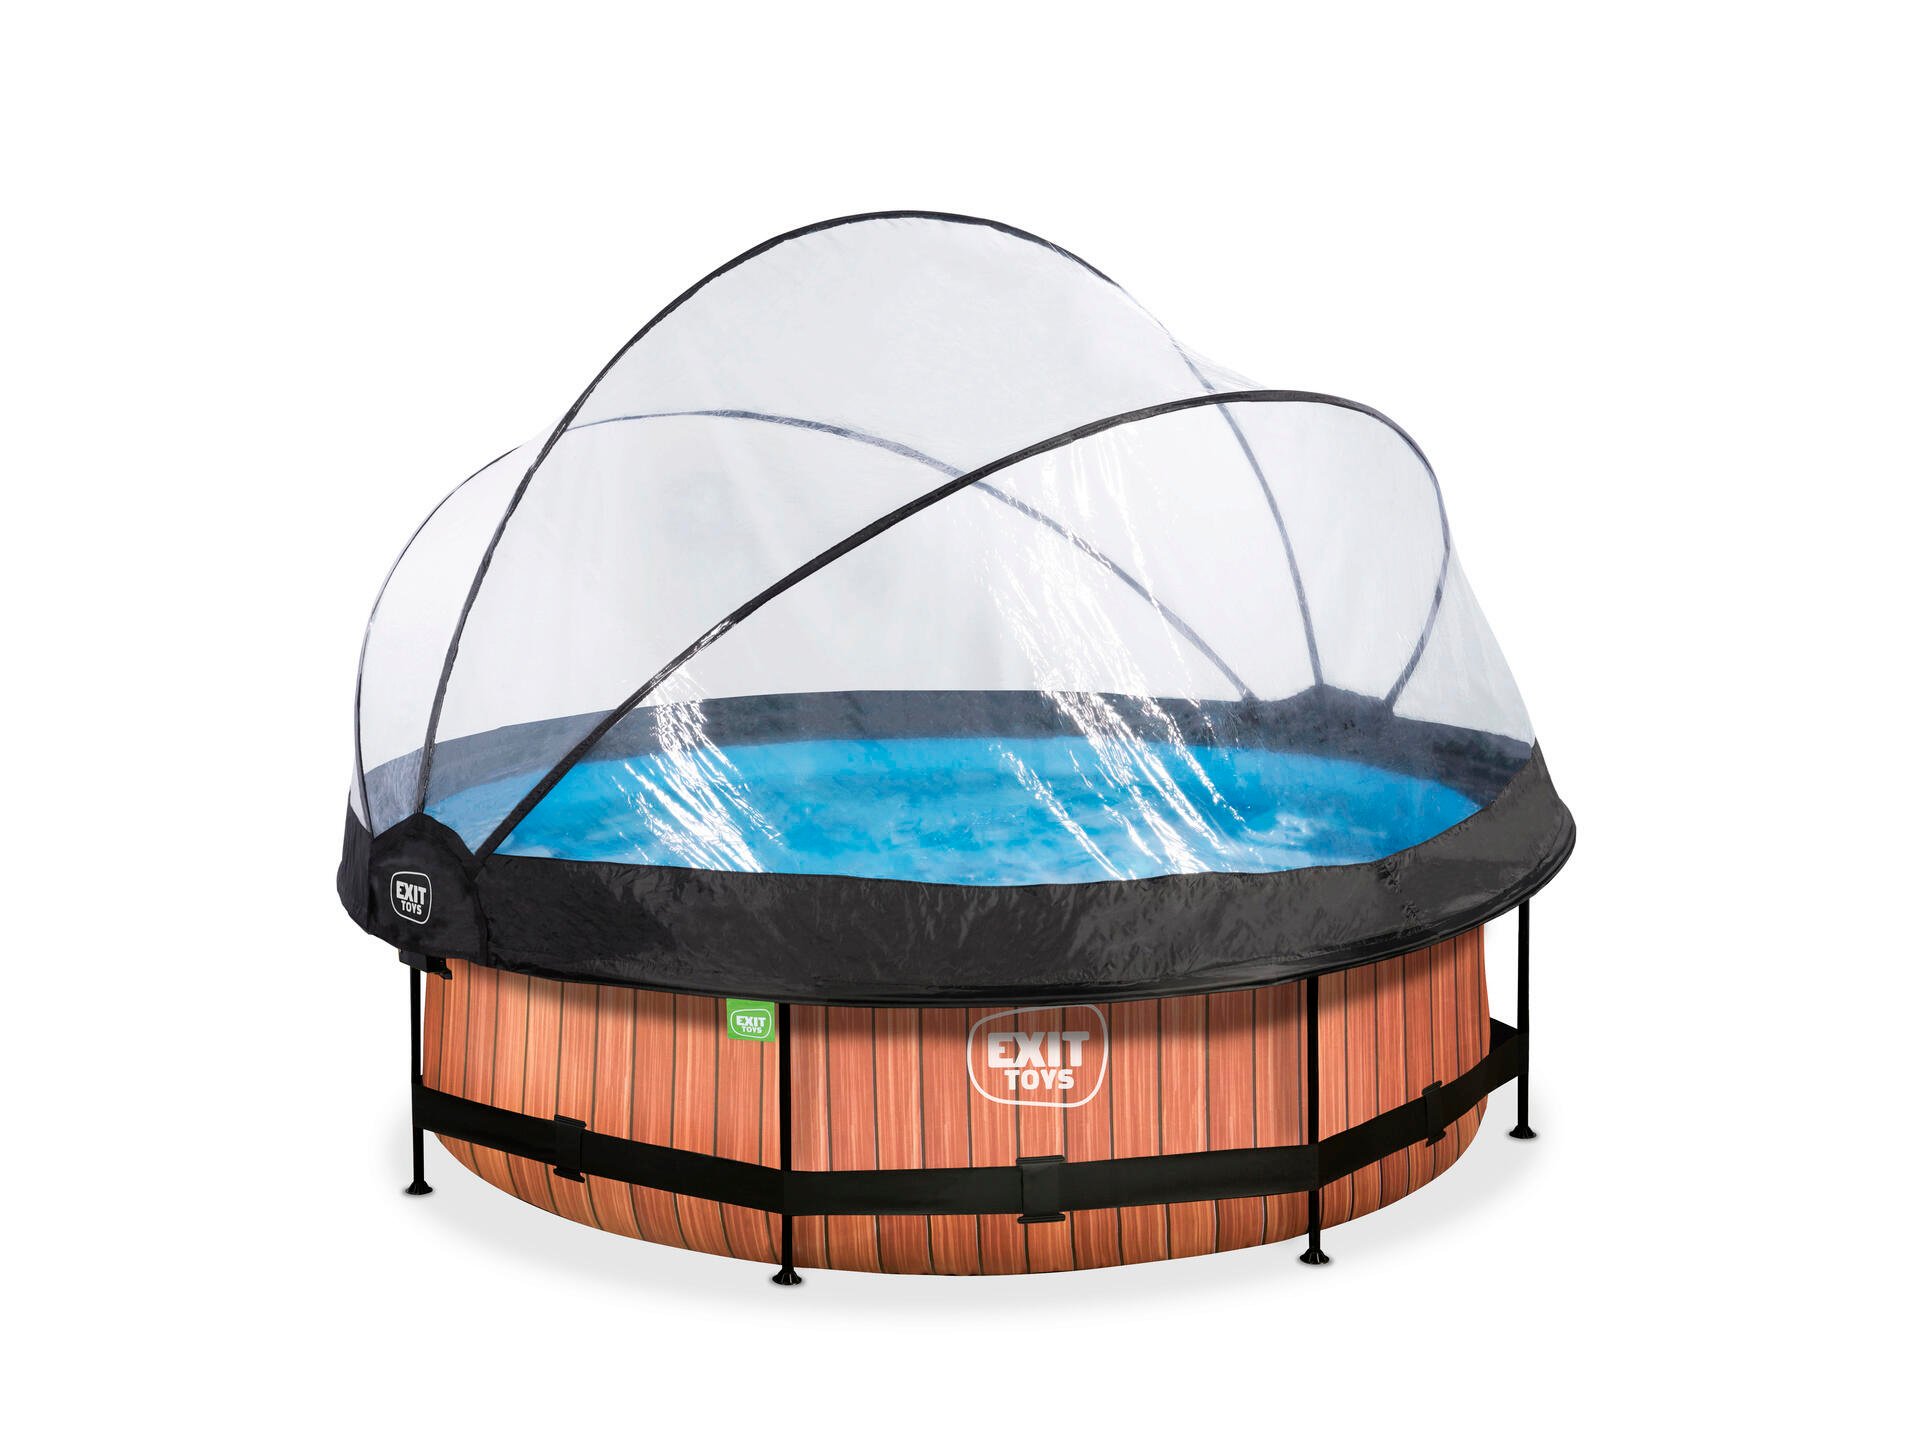 Exit Toys Wood piscine avec dôme 300x76 cm + pompe filtrante